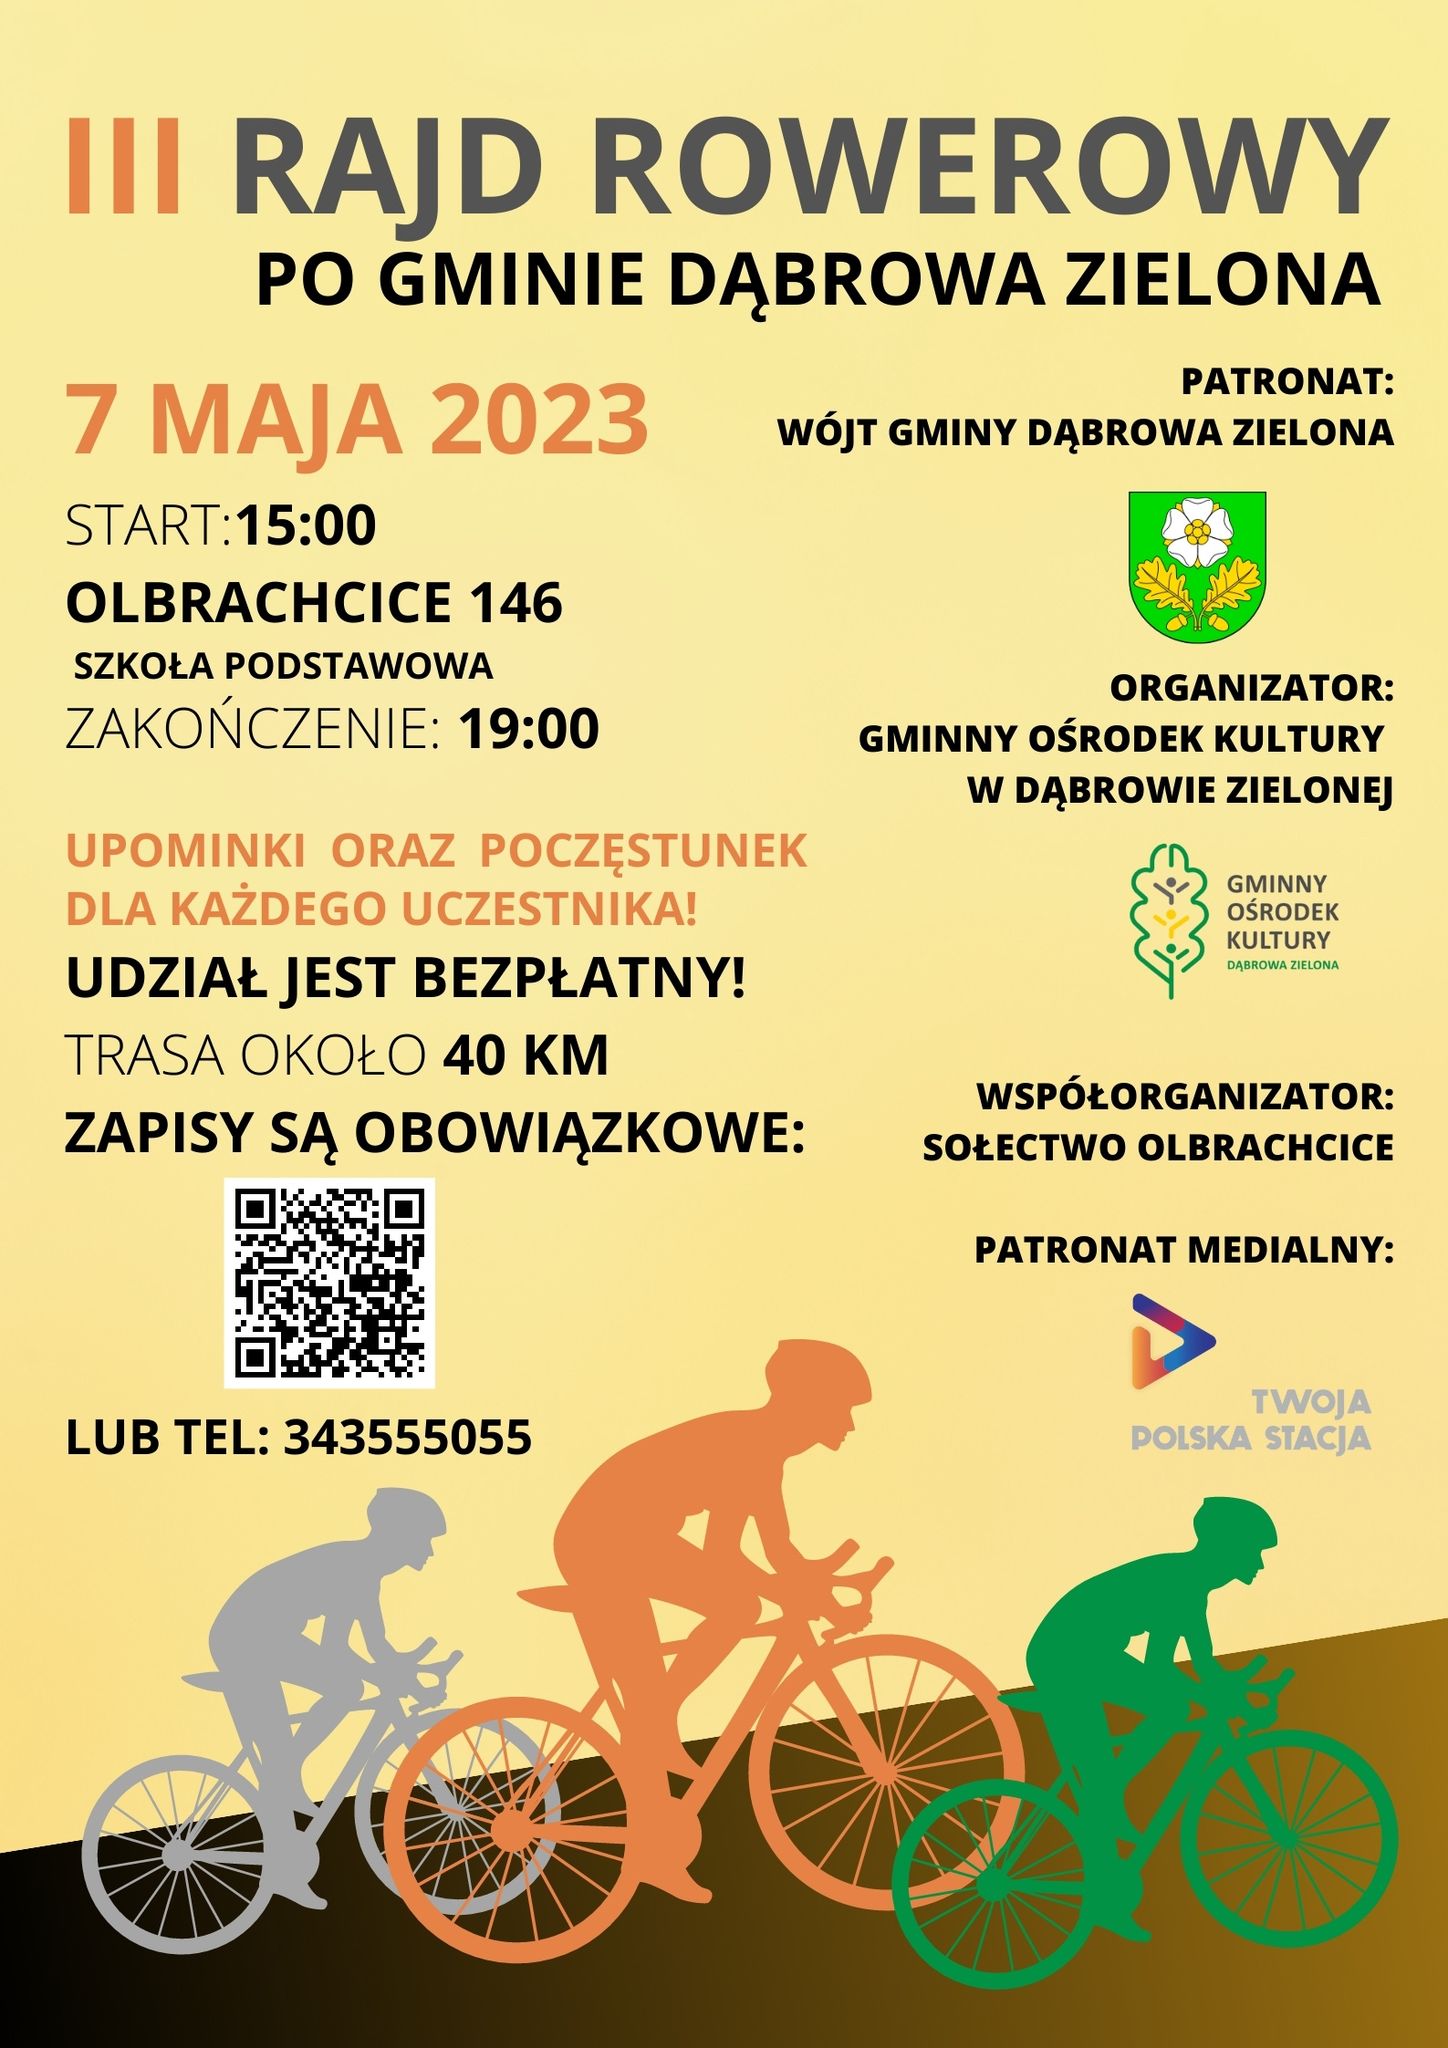 Plakat promujący III Rajd Rowerowy po Gminie Dąbrowa Zielona